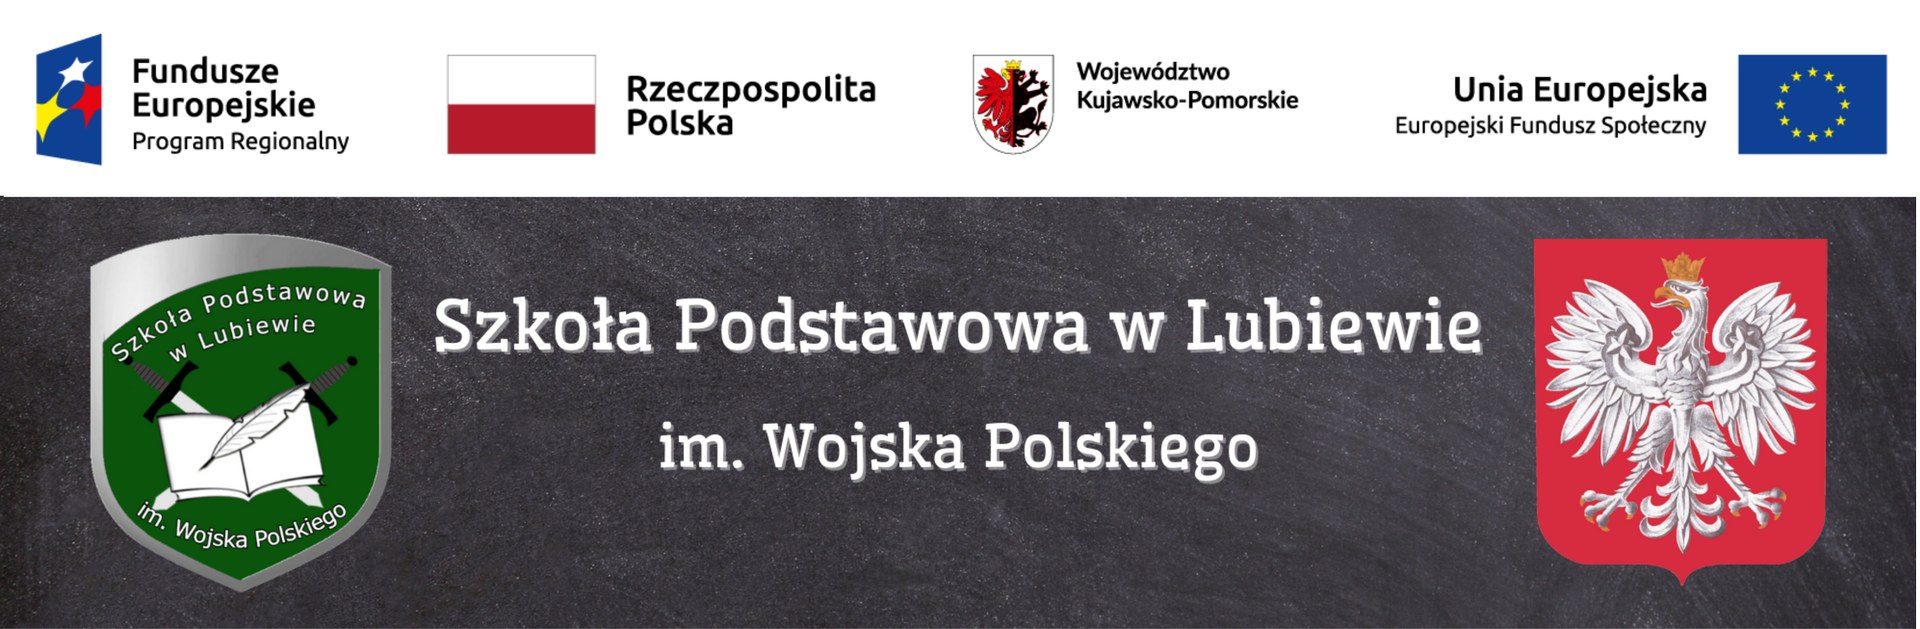 splubiewo.edu.pl – Szkoła Podstawowa im. Wojska Polskiego w Lubiewie